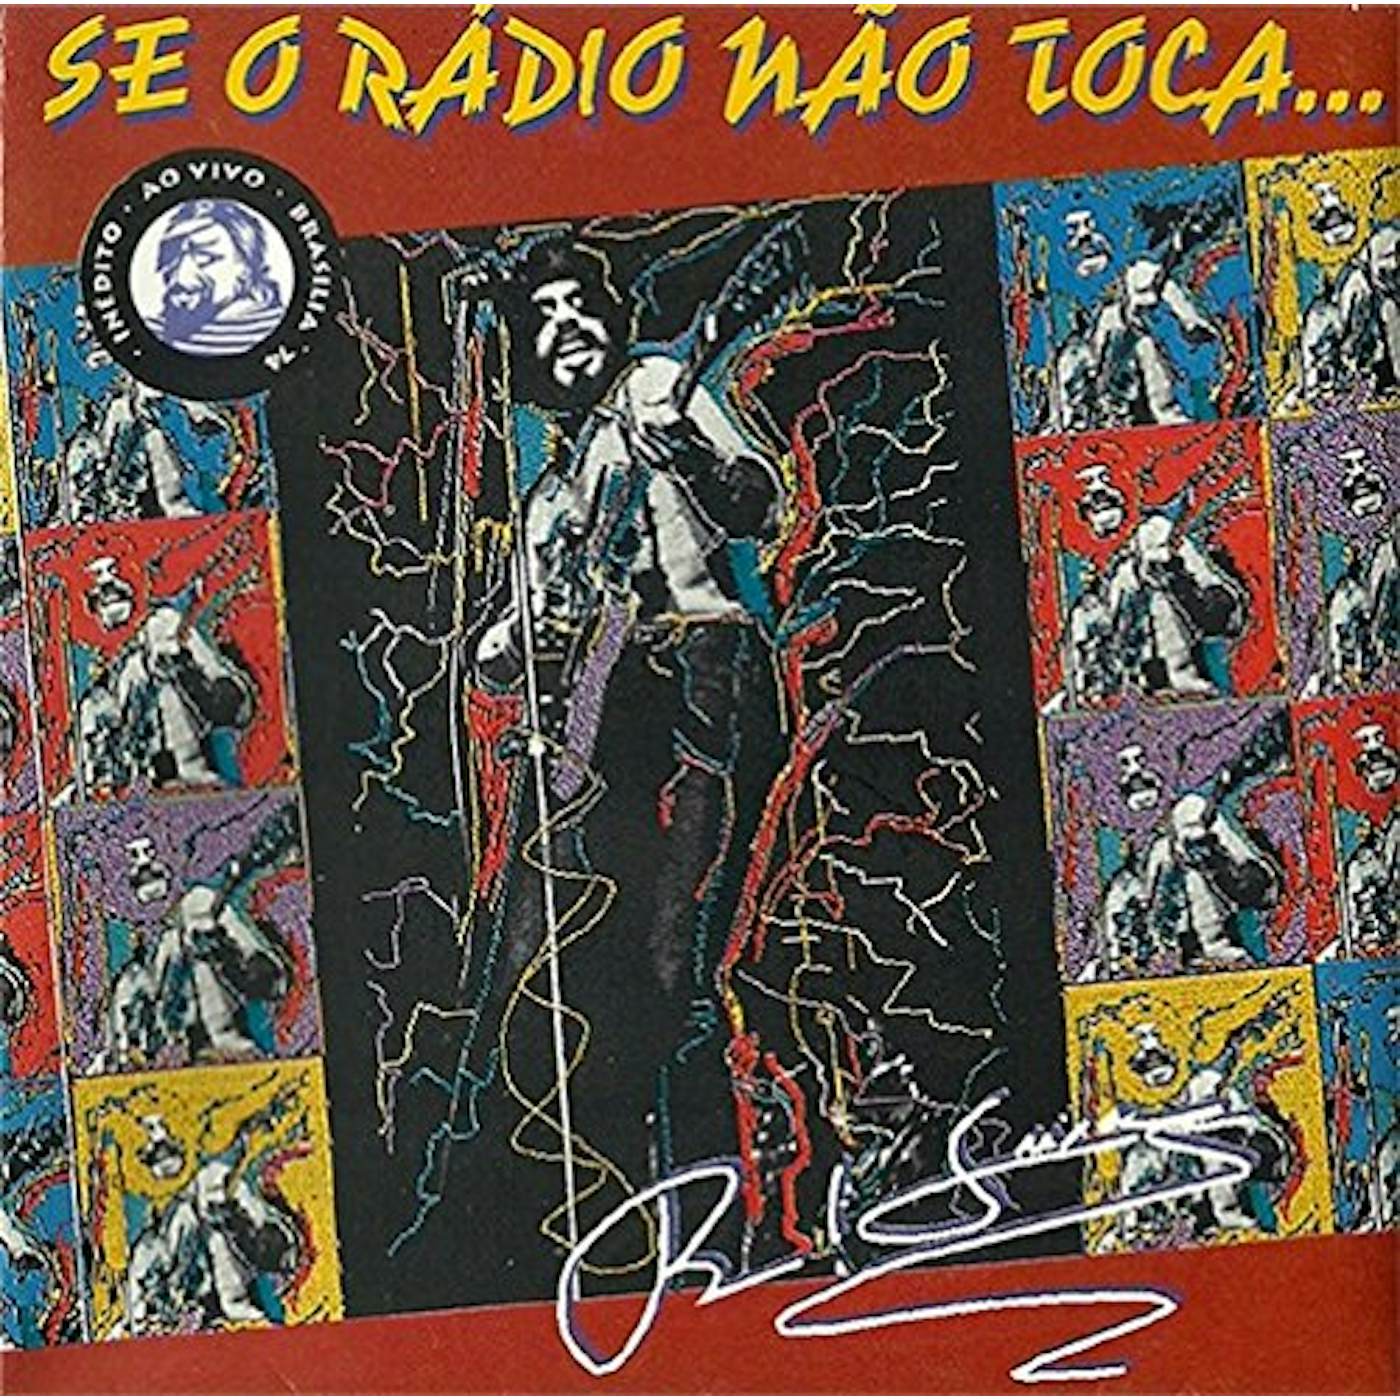 Raul Seixas SE O RADIO NAO TOCA CD